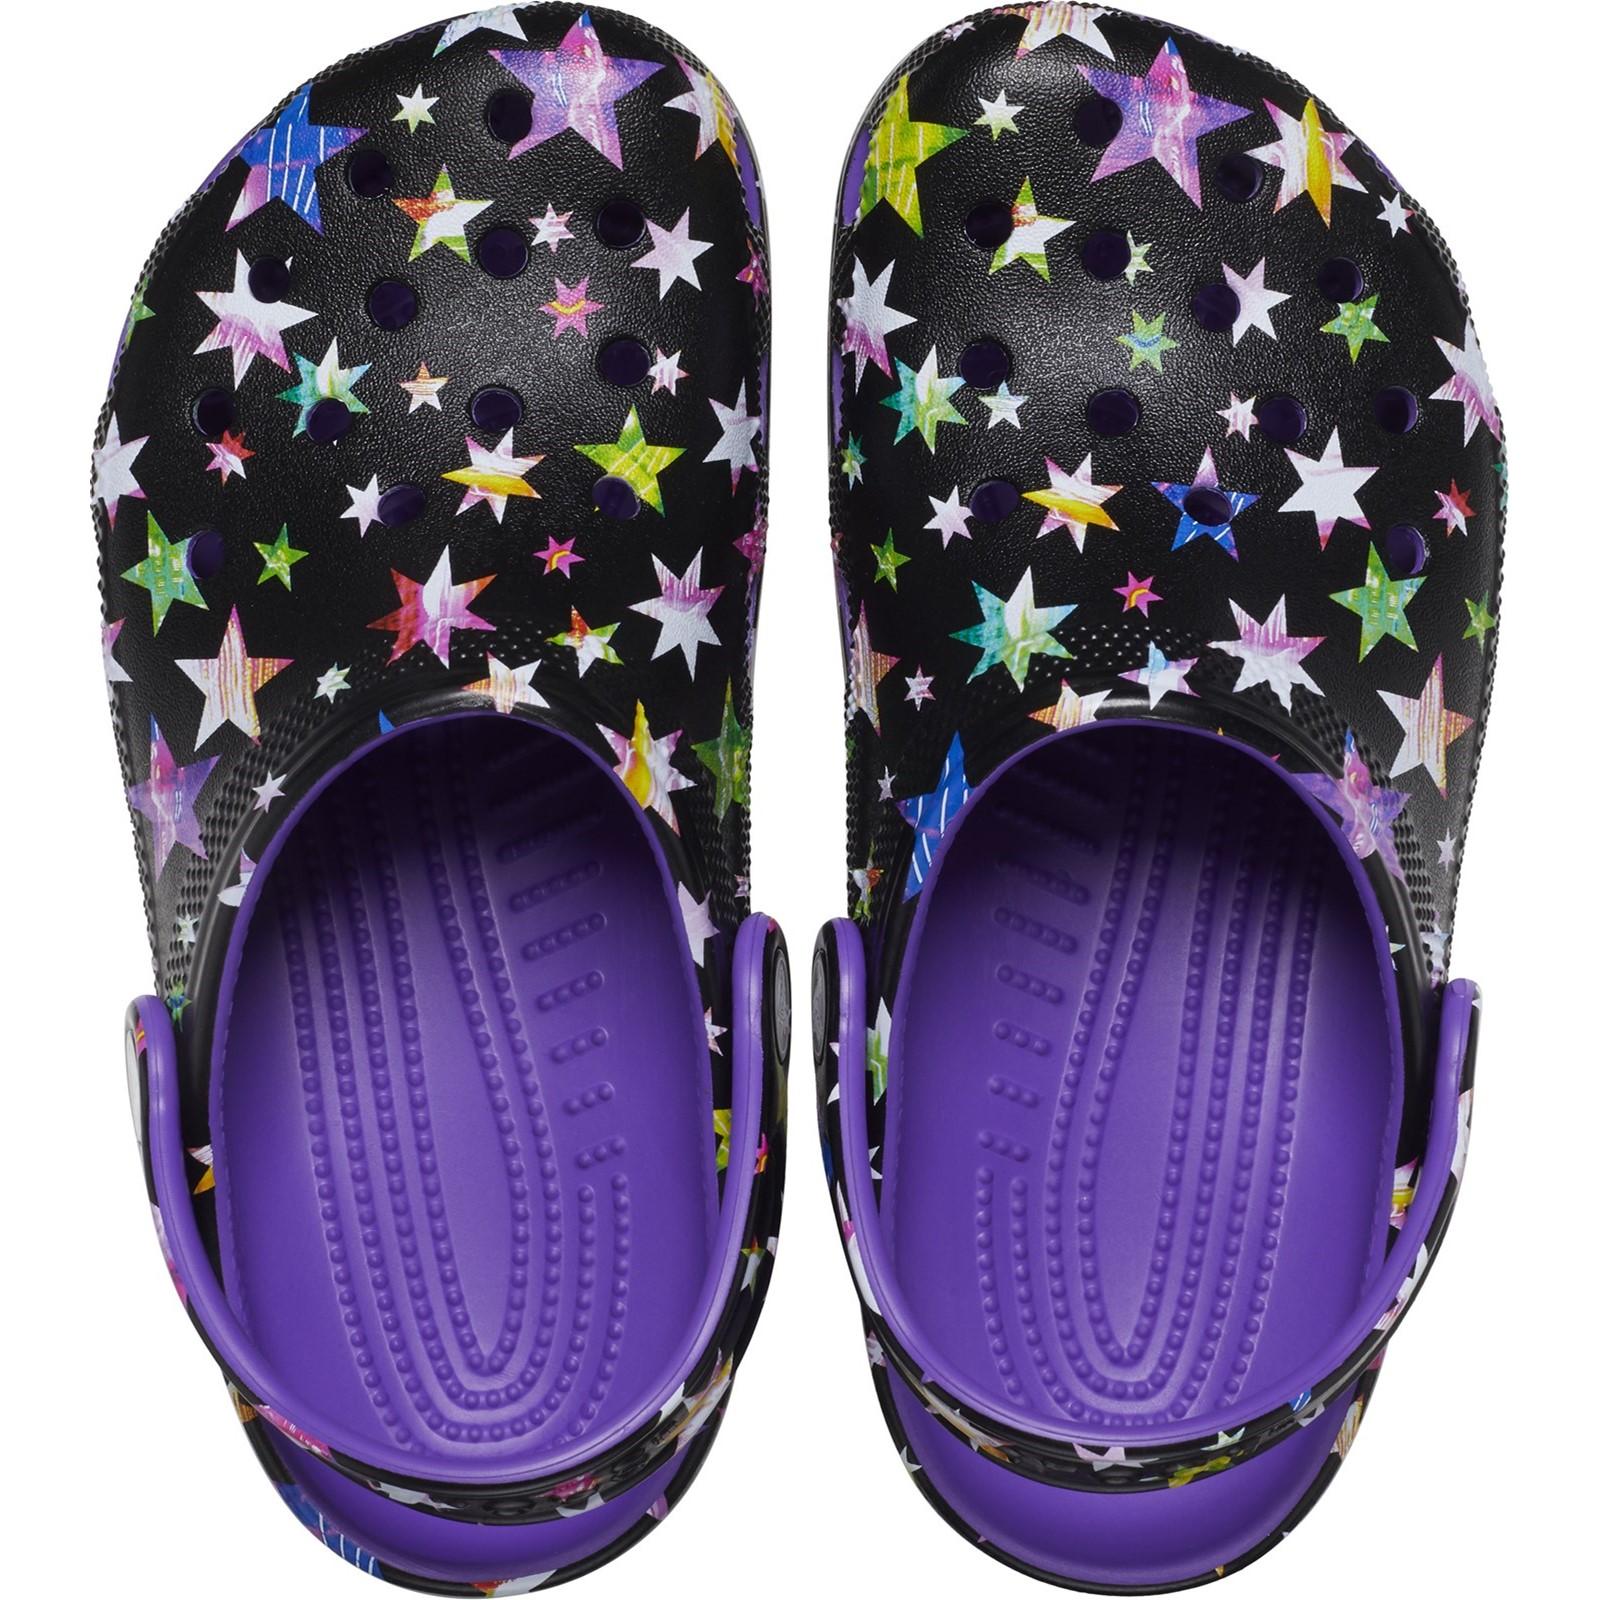 Crocs Classic Star Print Clog Sandals